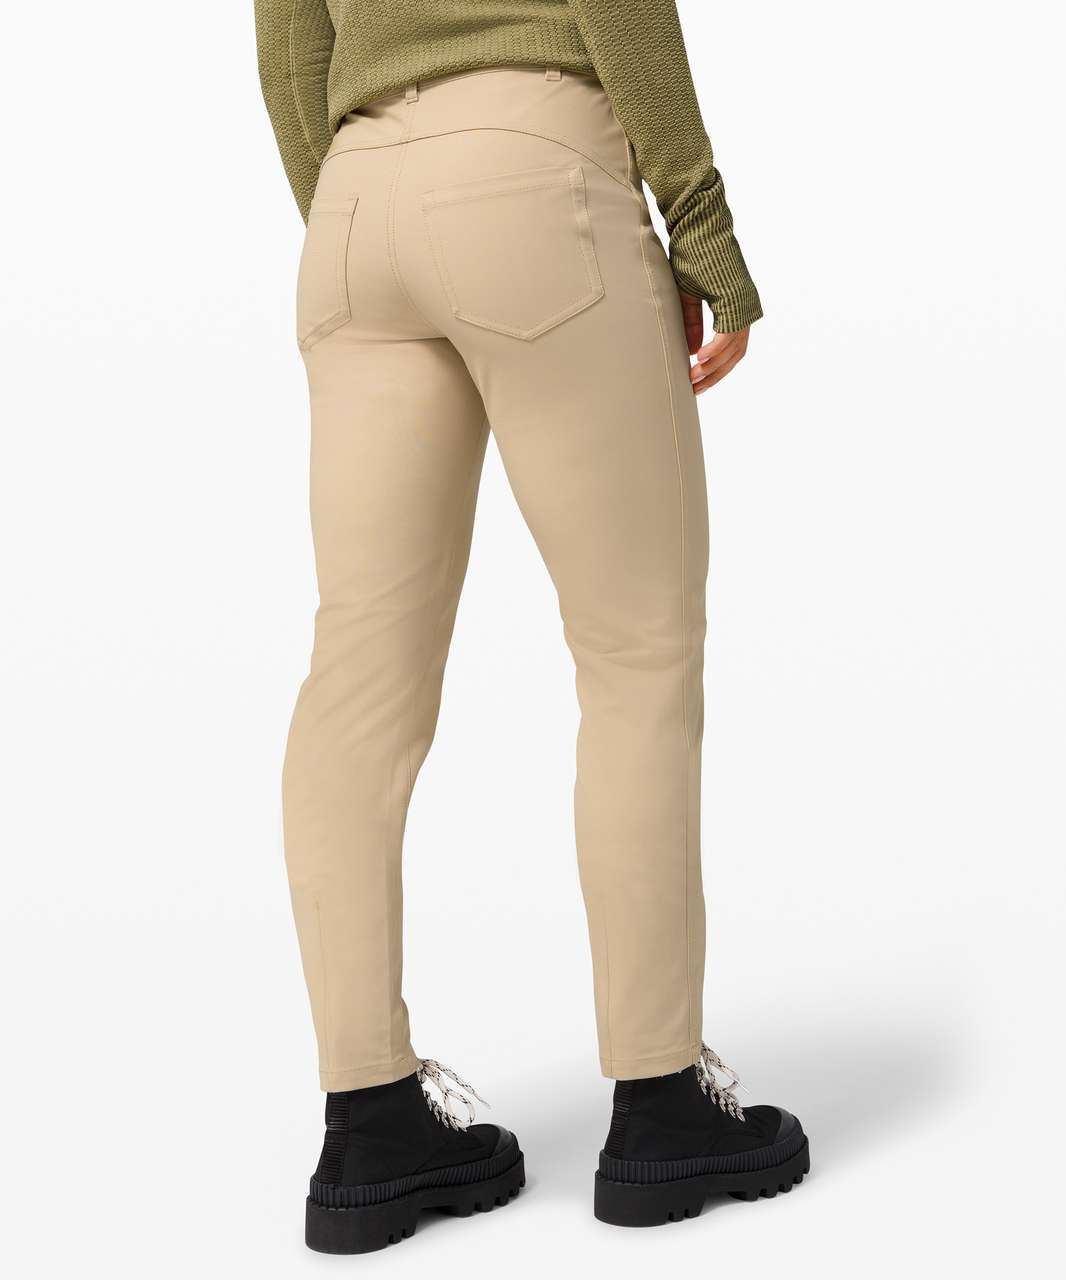 Lululemon Women's City Sleek 5 Pocket Pant 30, Golf Equipment: Clubs,  Balls, Bags